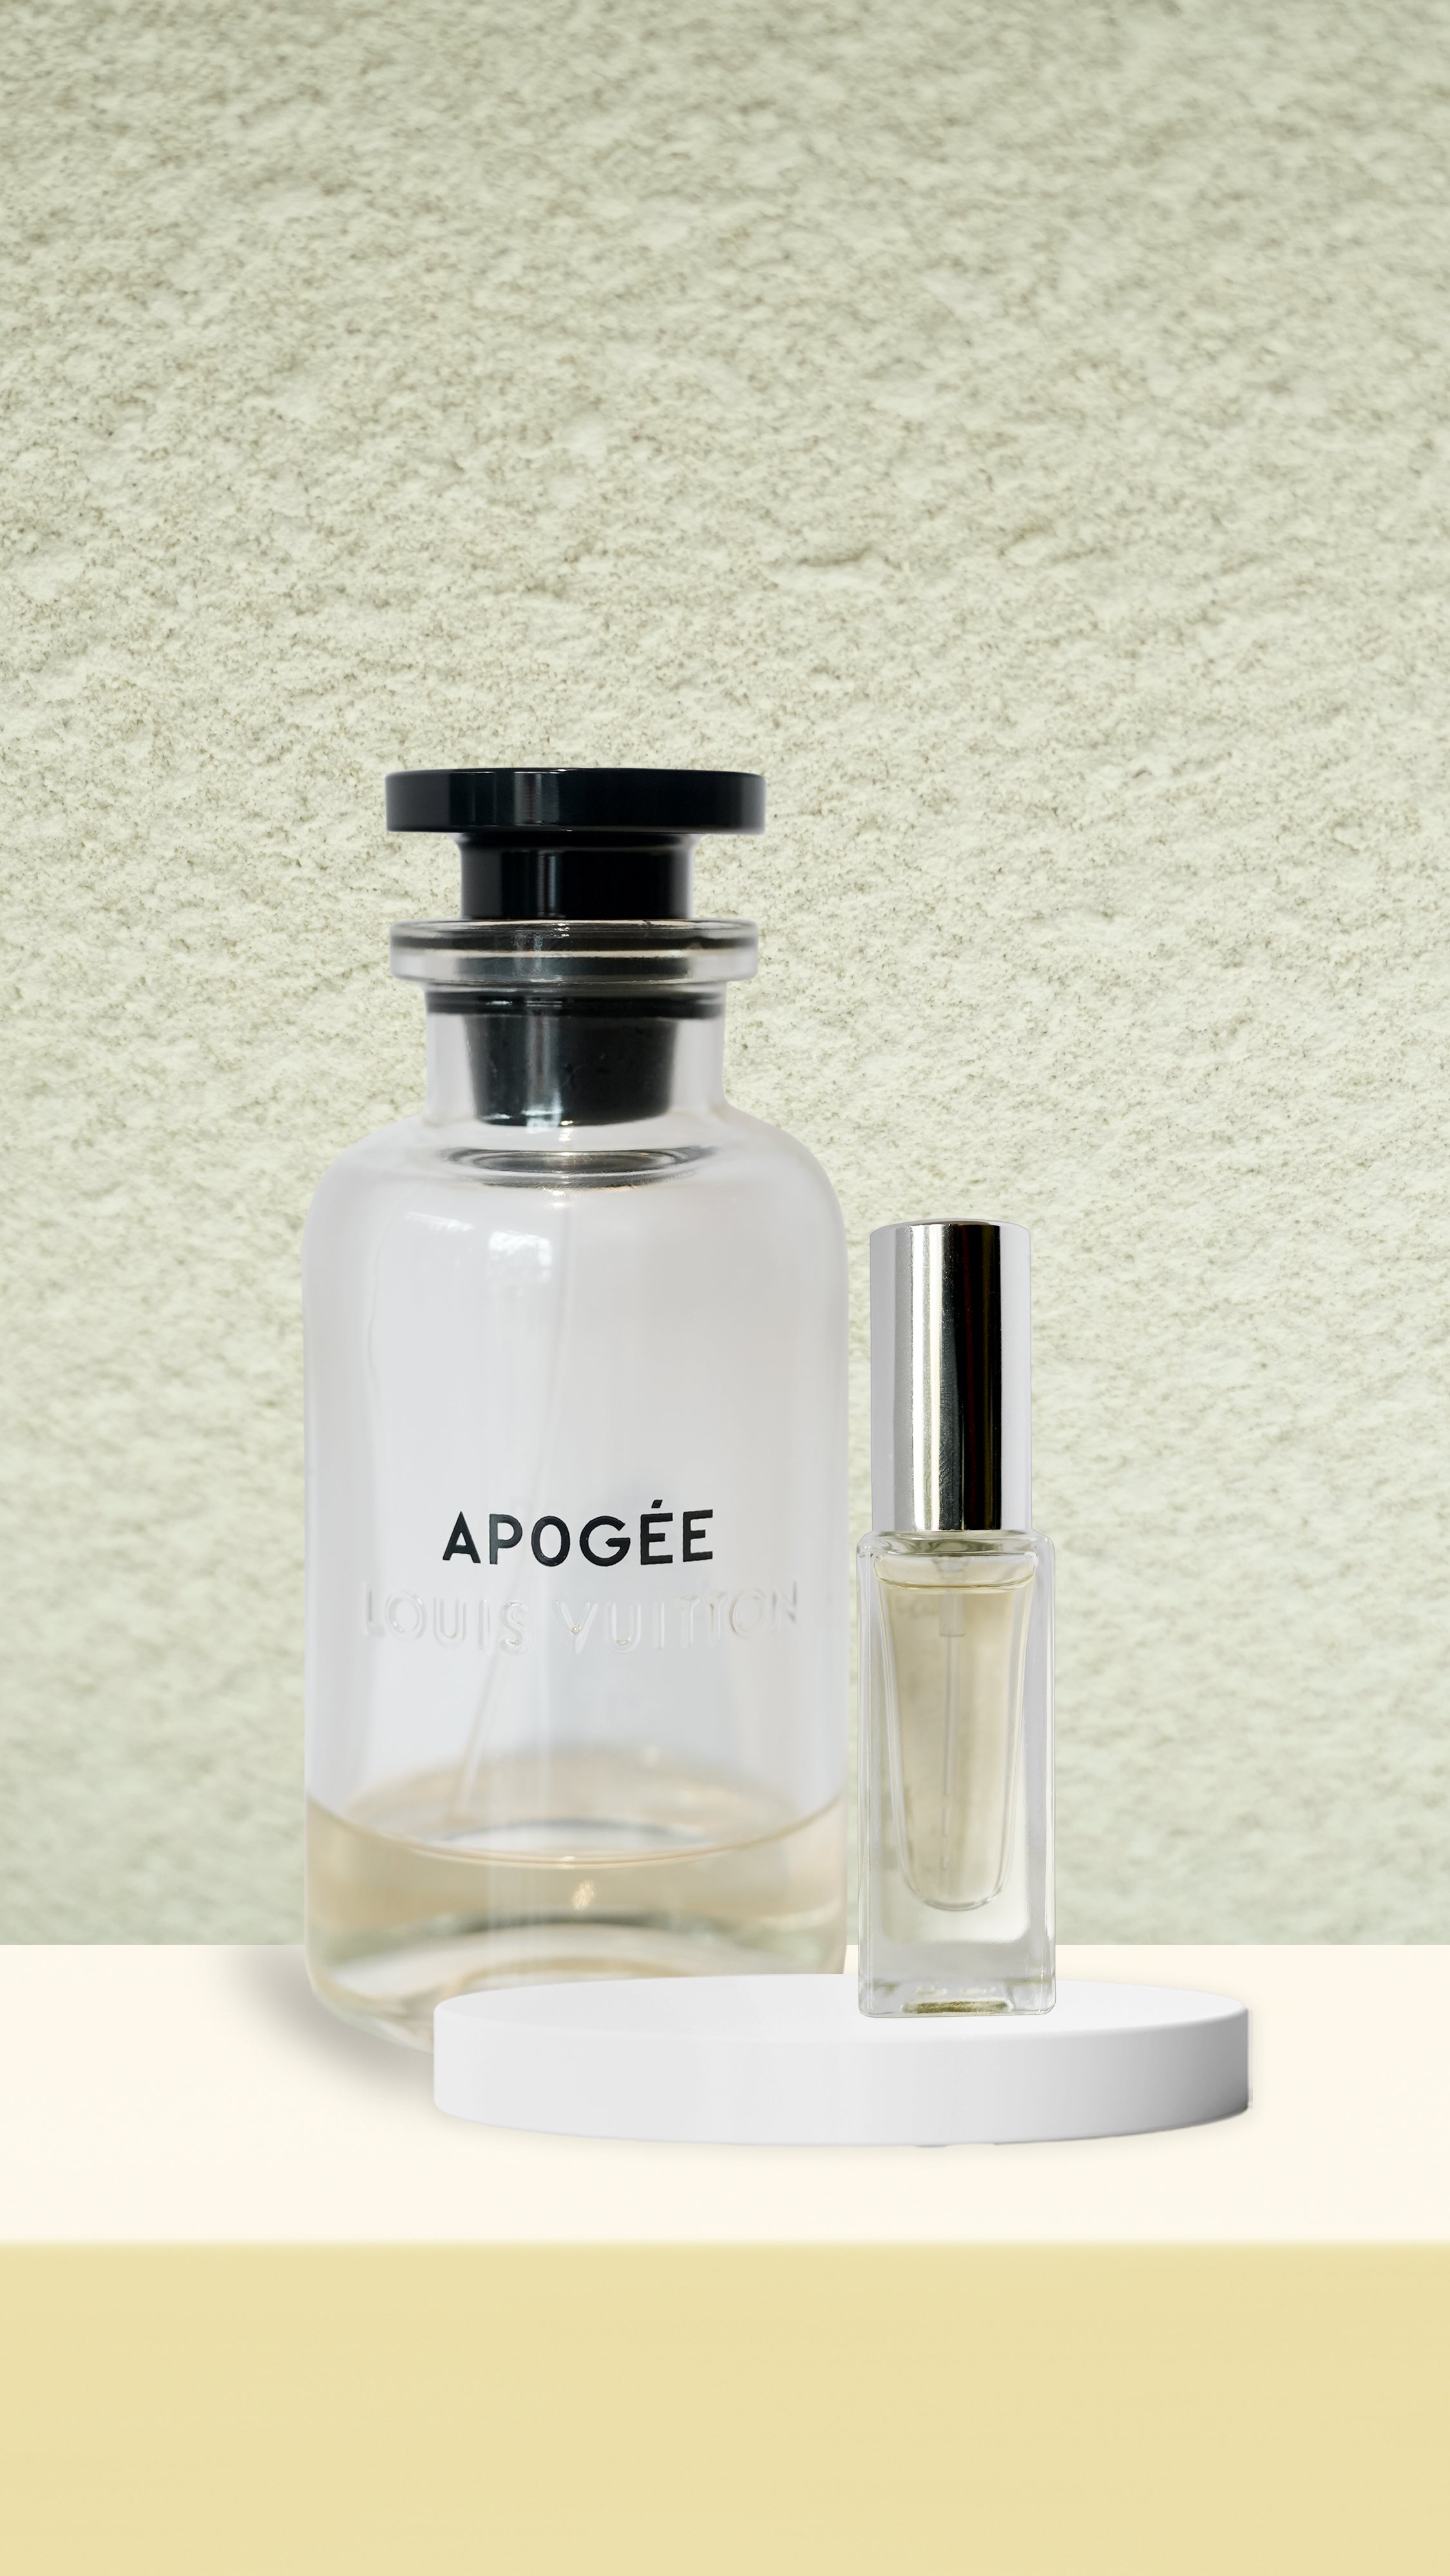 apogee perfume by louis vuitton